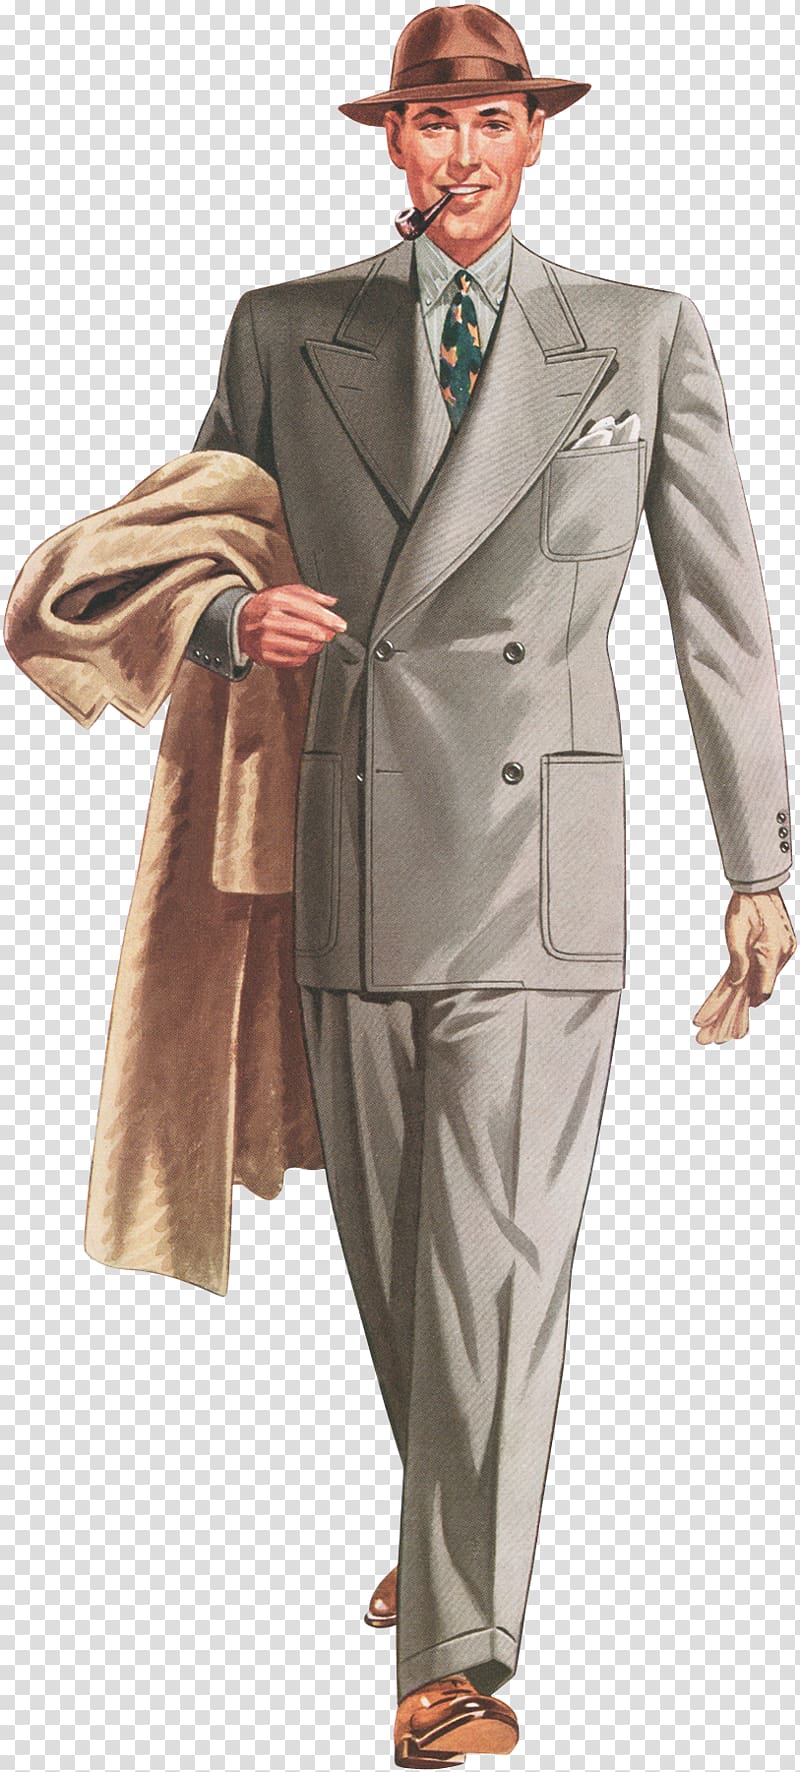 1930s 1940s Fashion Suit Vintage clothing, gentle men transparent background PNG clipart